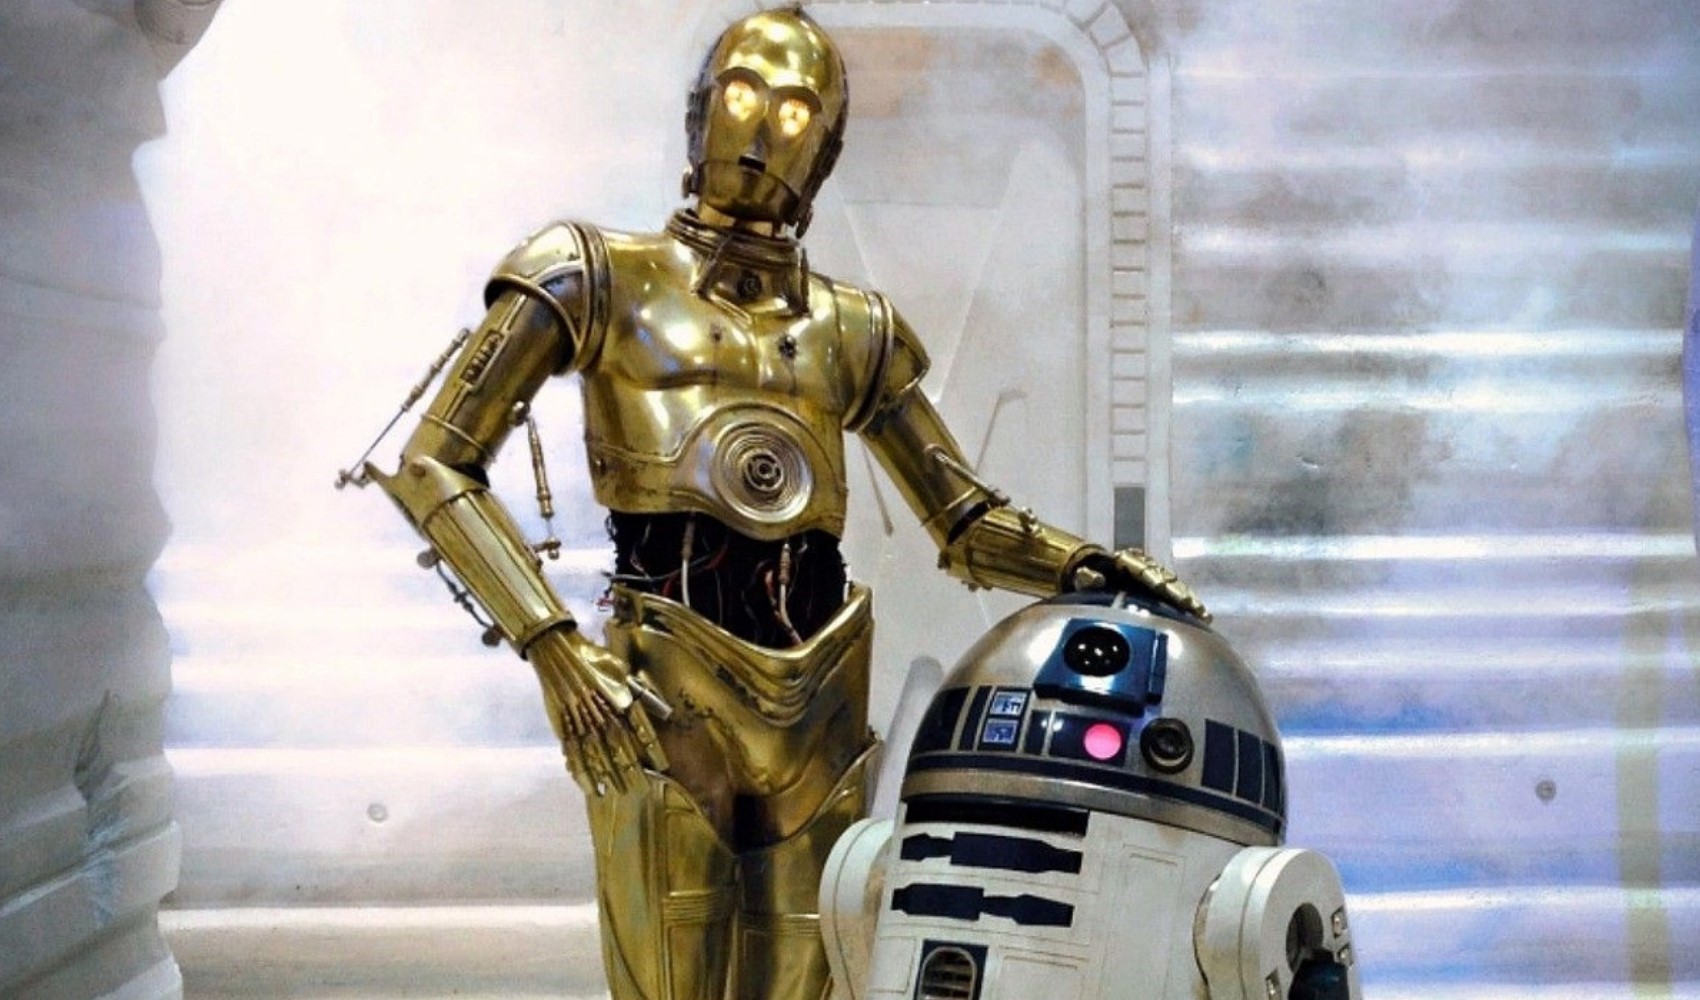 Star Wars robotu 27 milyon liraya satıldı